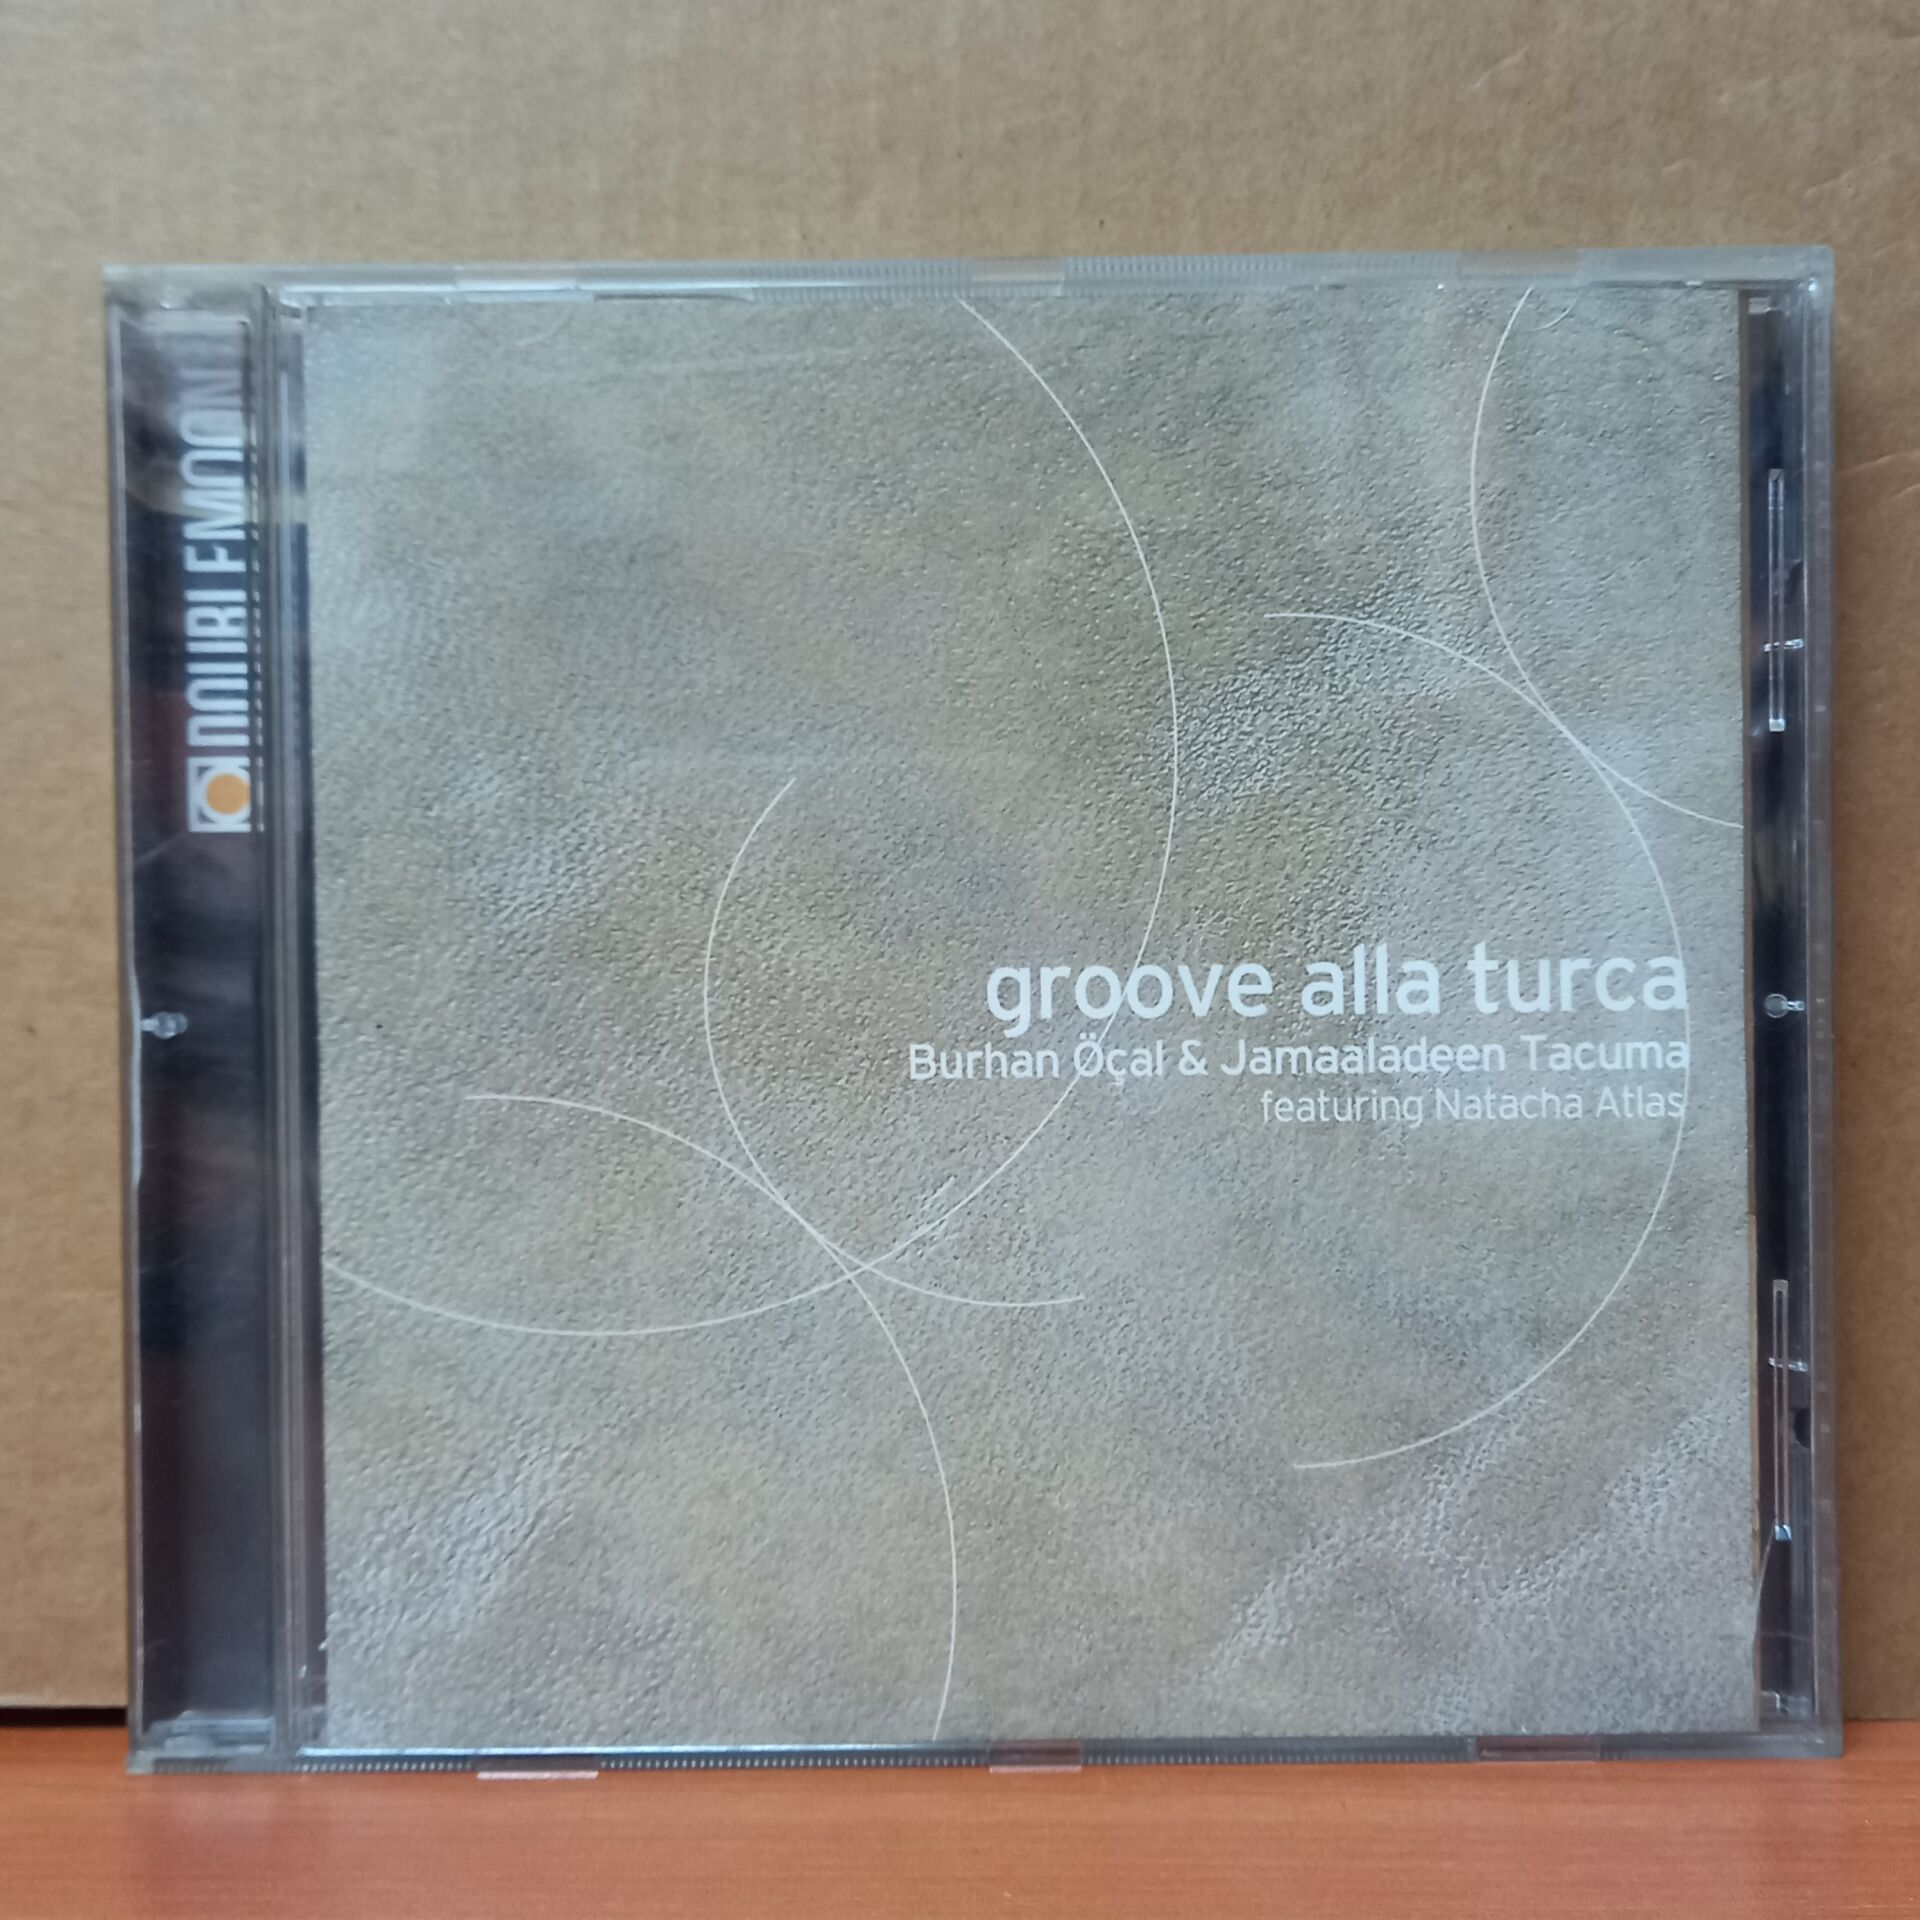 BURHAN ÖÇAL & JAMAALADEEN TACUMA FEAT. NATACHA ATLAS - GROOVE ALLA TURCA (1999) - CD 2.EL